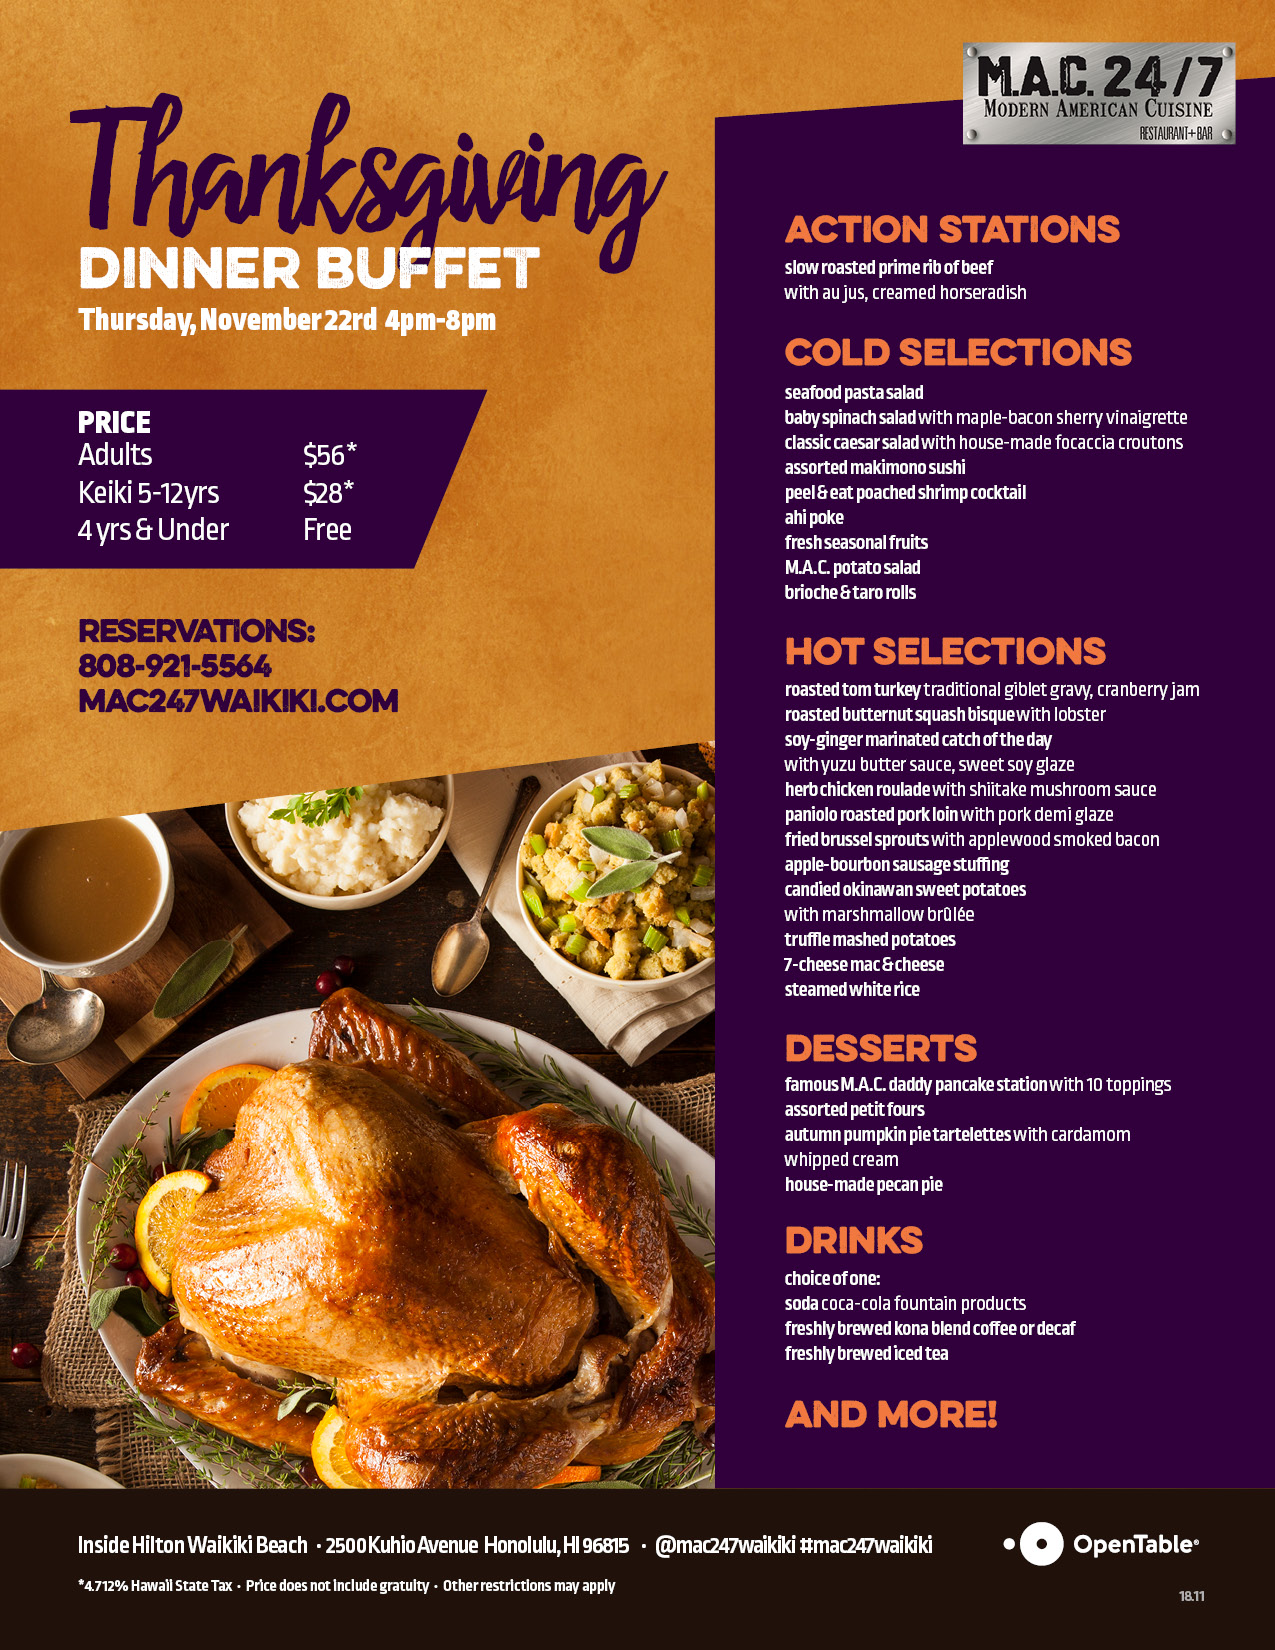 Thanksgiving Buffet - Mac 24/7 Restaurant + Bar